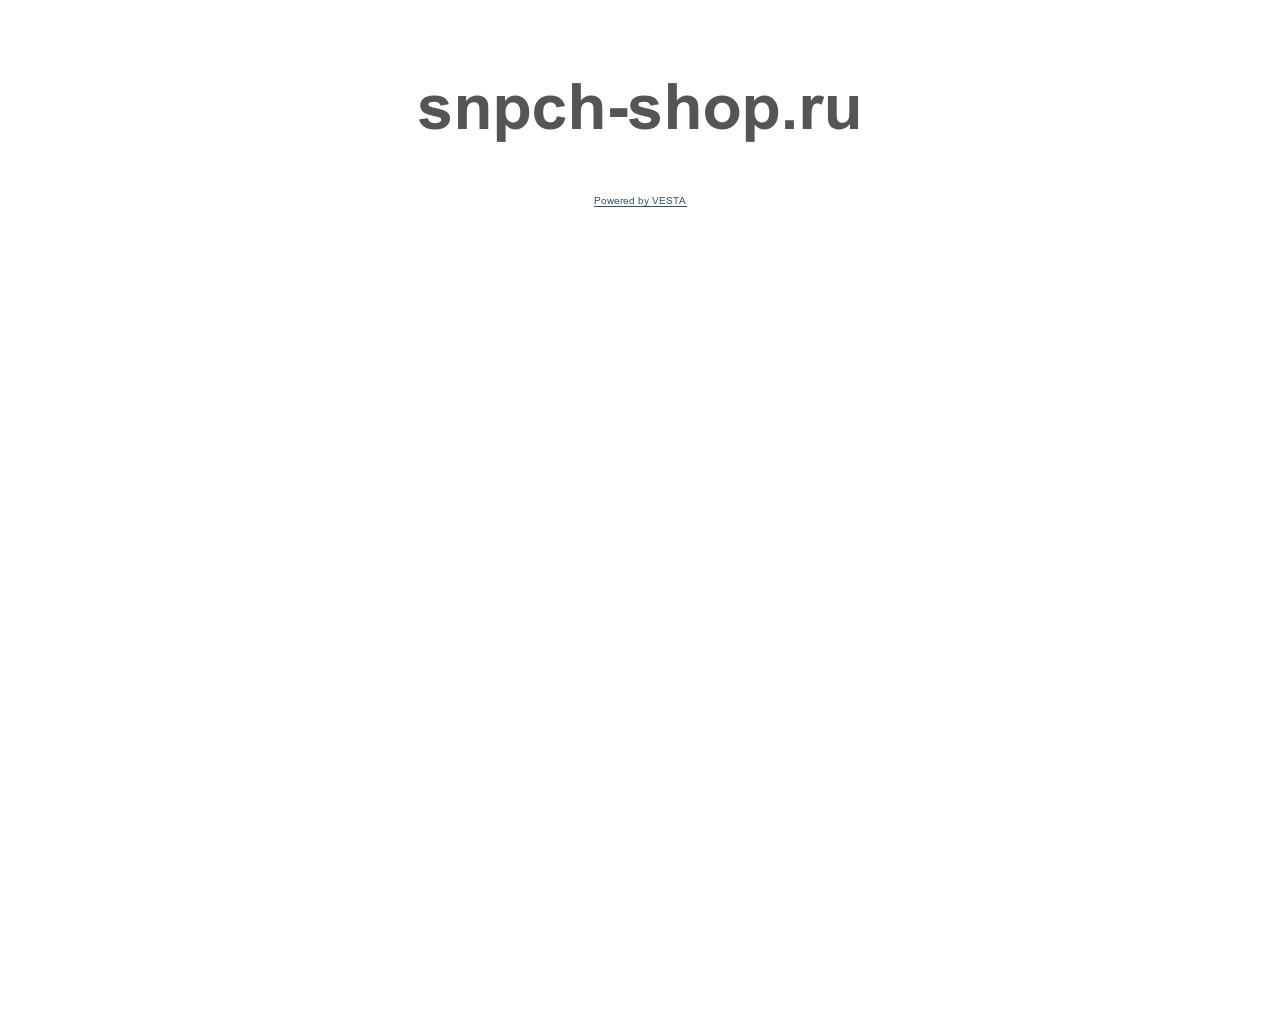 Изображение сайта snpch-shop.ru в разрешении 1280x1024